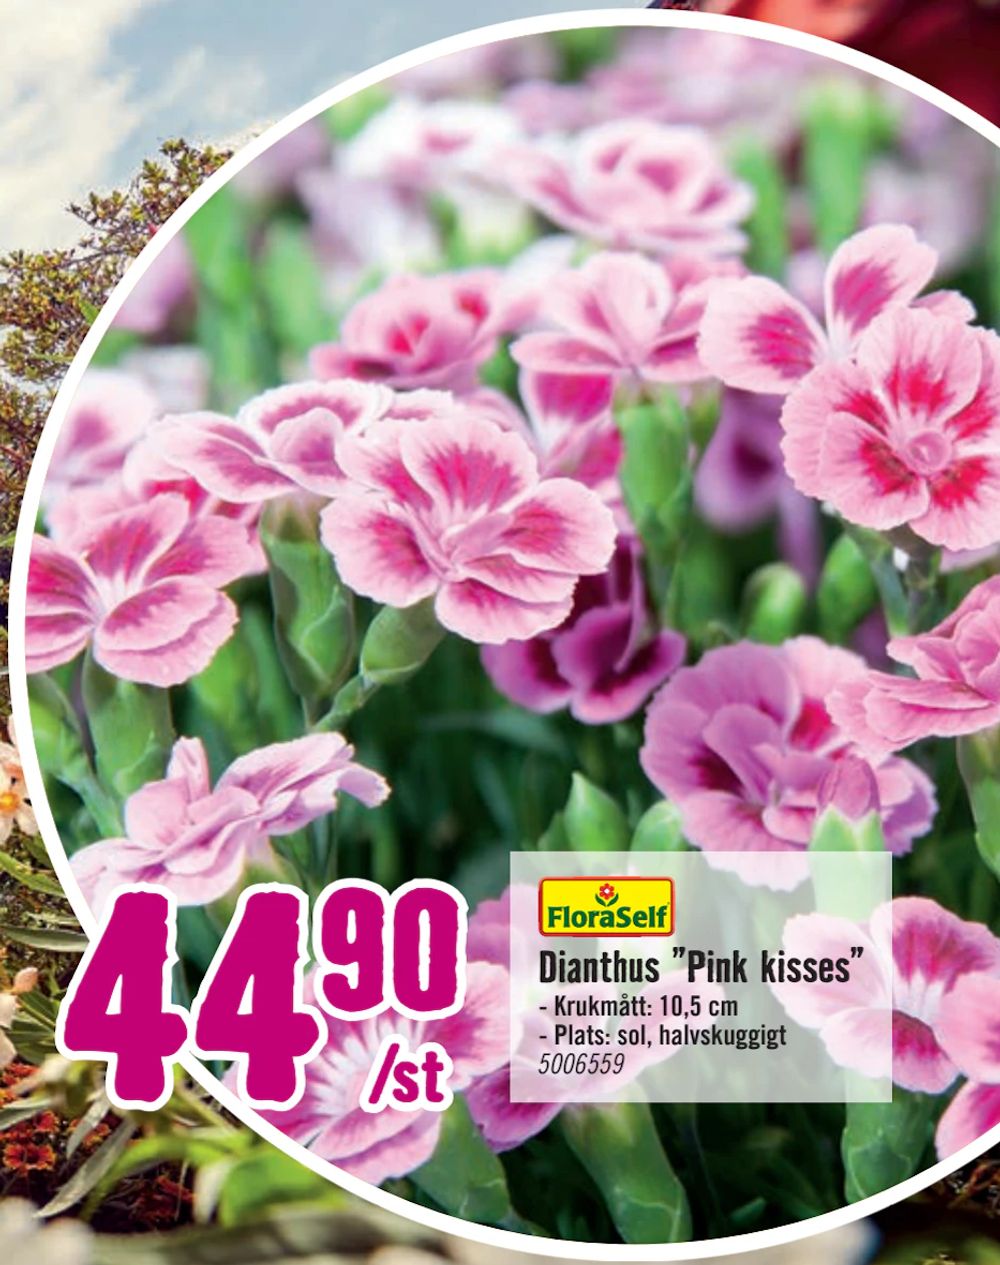 Erbjudanden på Dianthus ”Pink kisses” från Hornbach för 44,90 kr